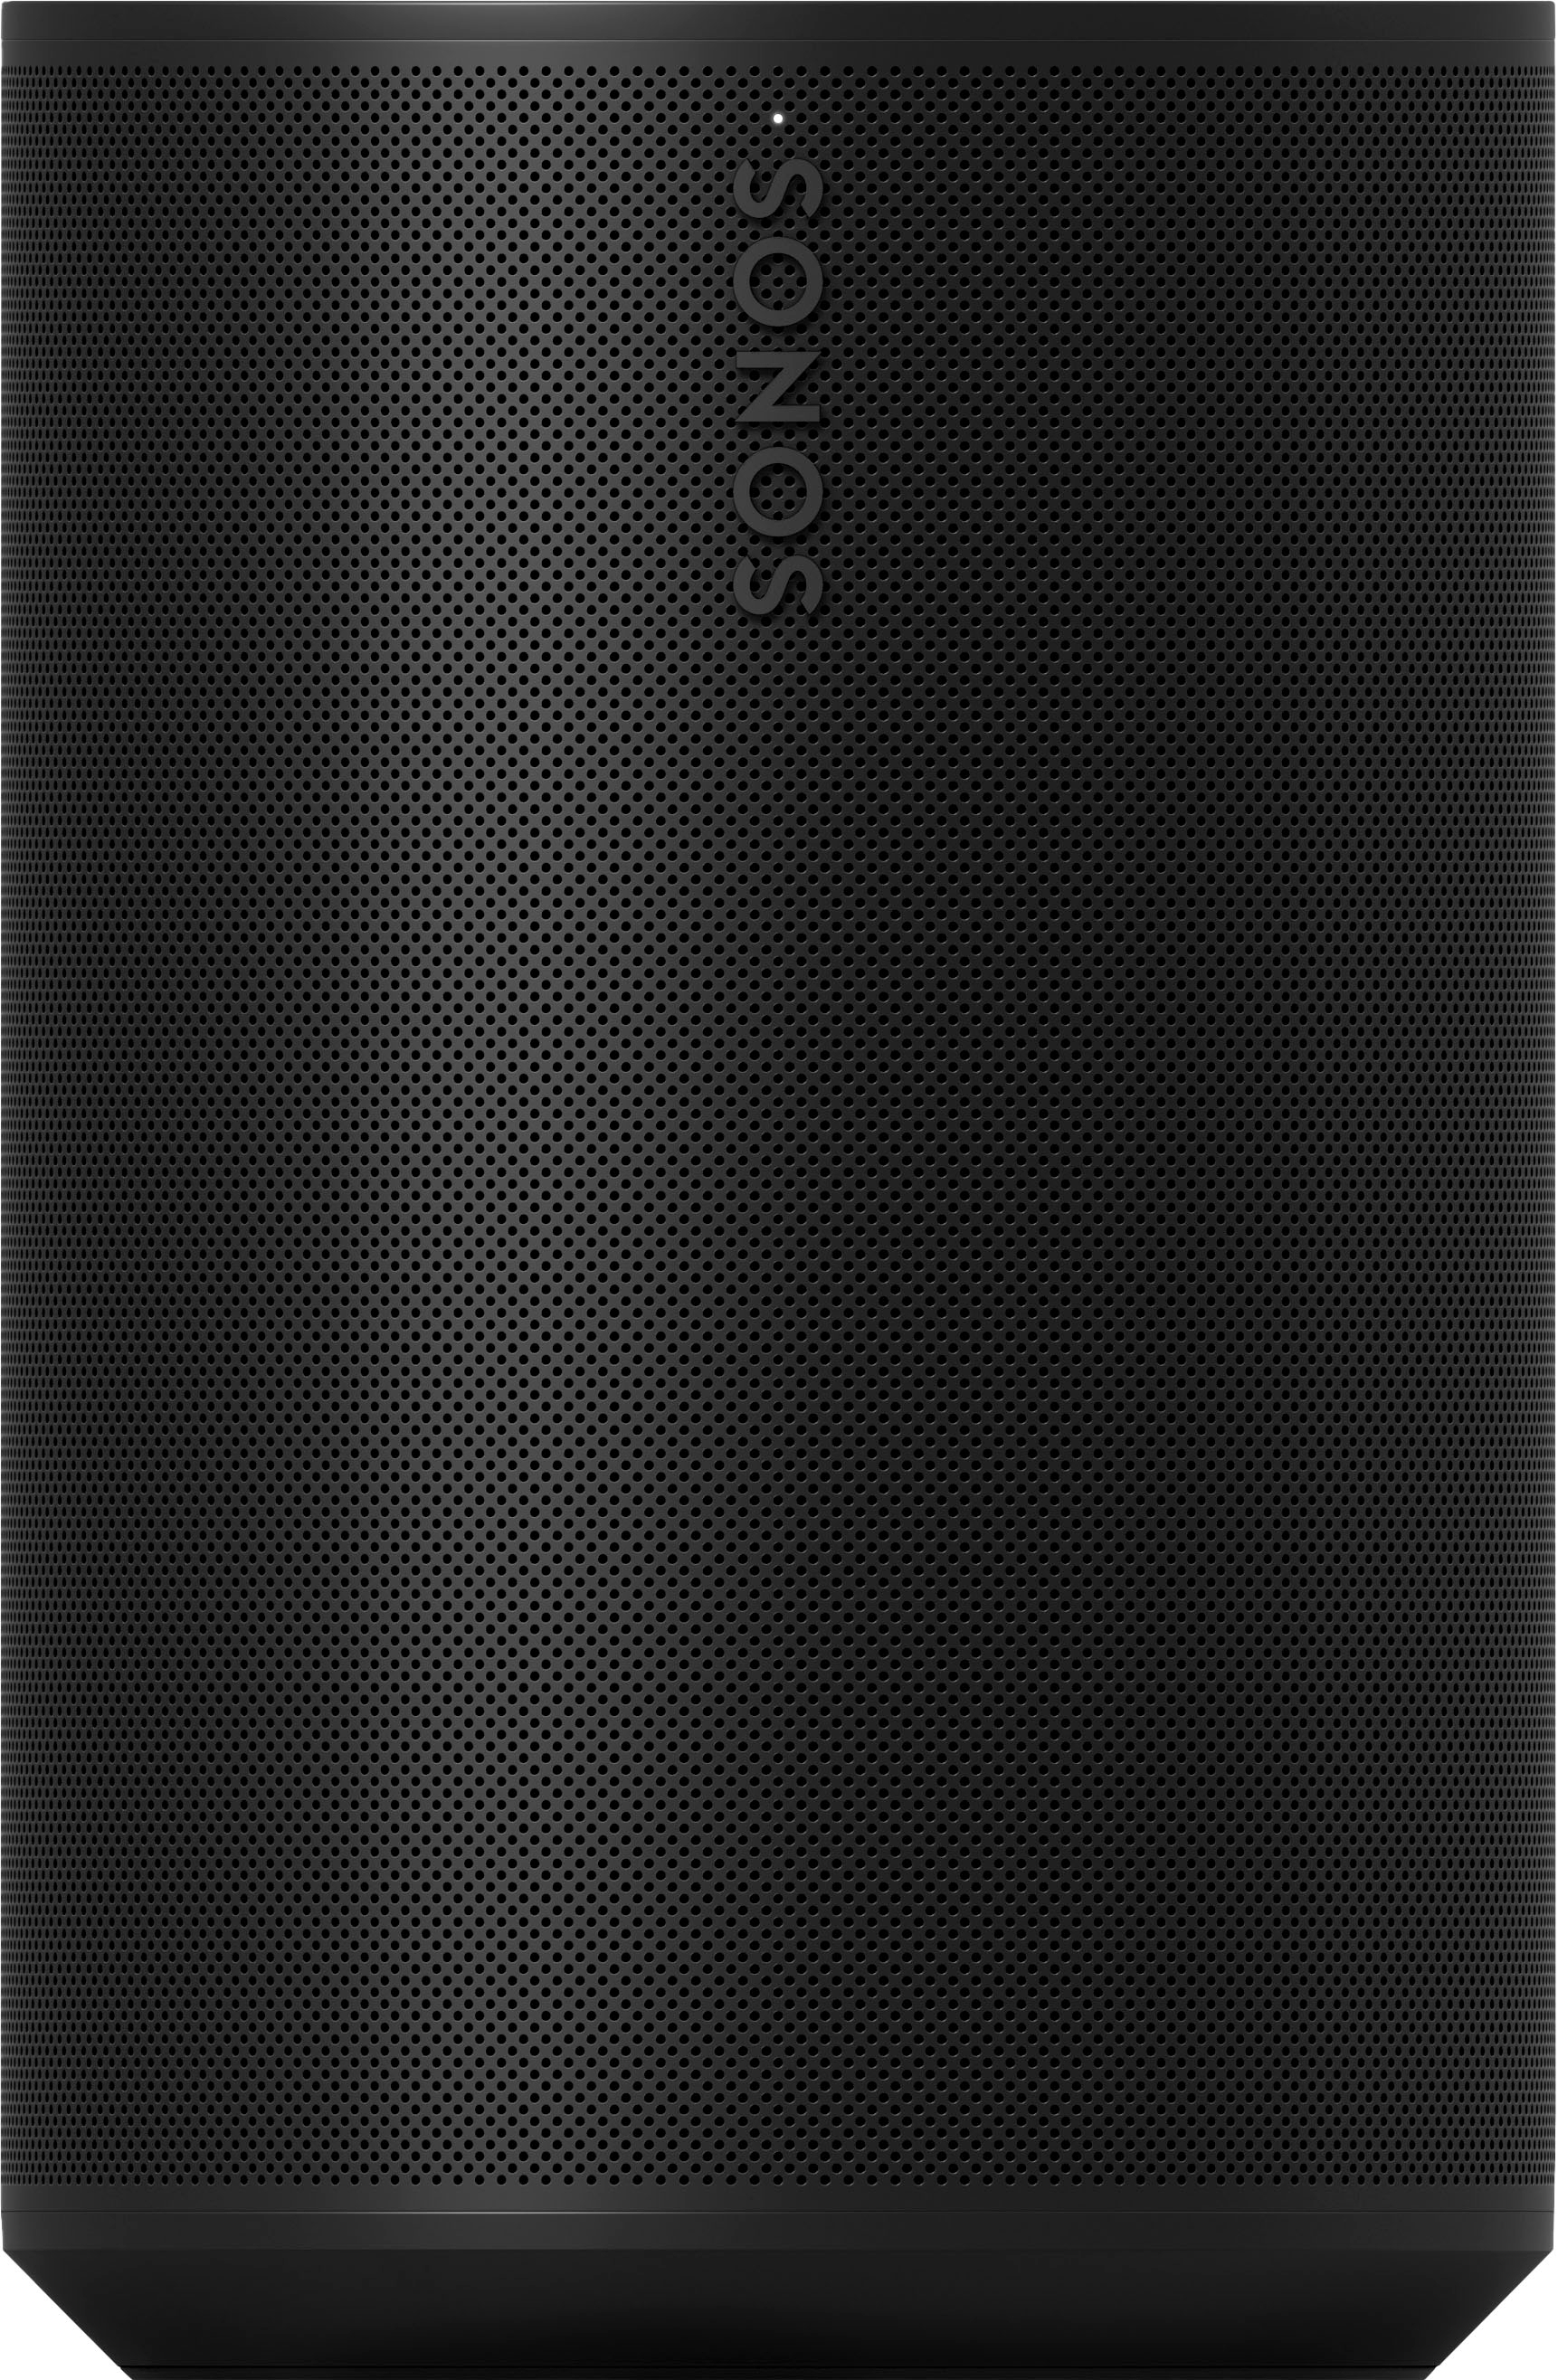 Sonos Era 100 Best - Black Speaker E10G1US1BLK Buy (Each)